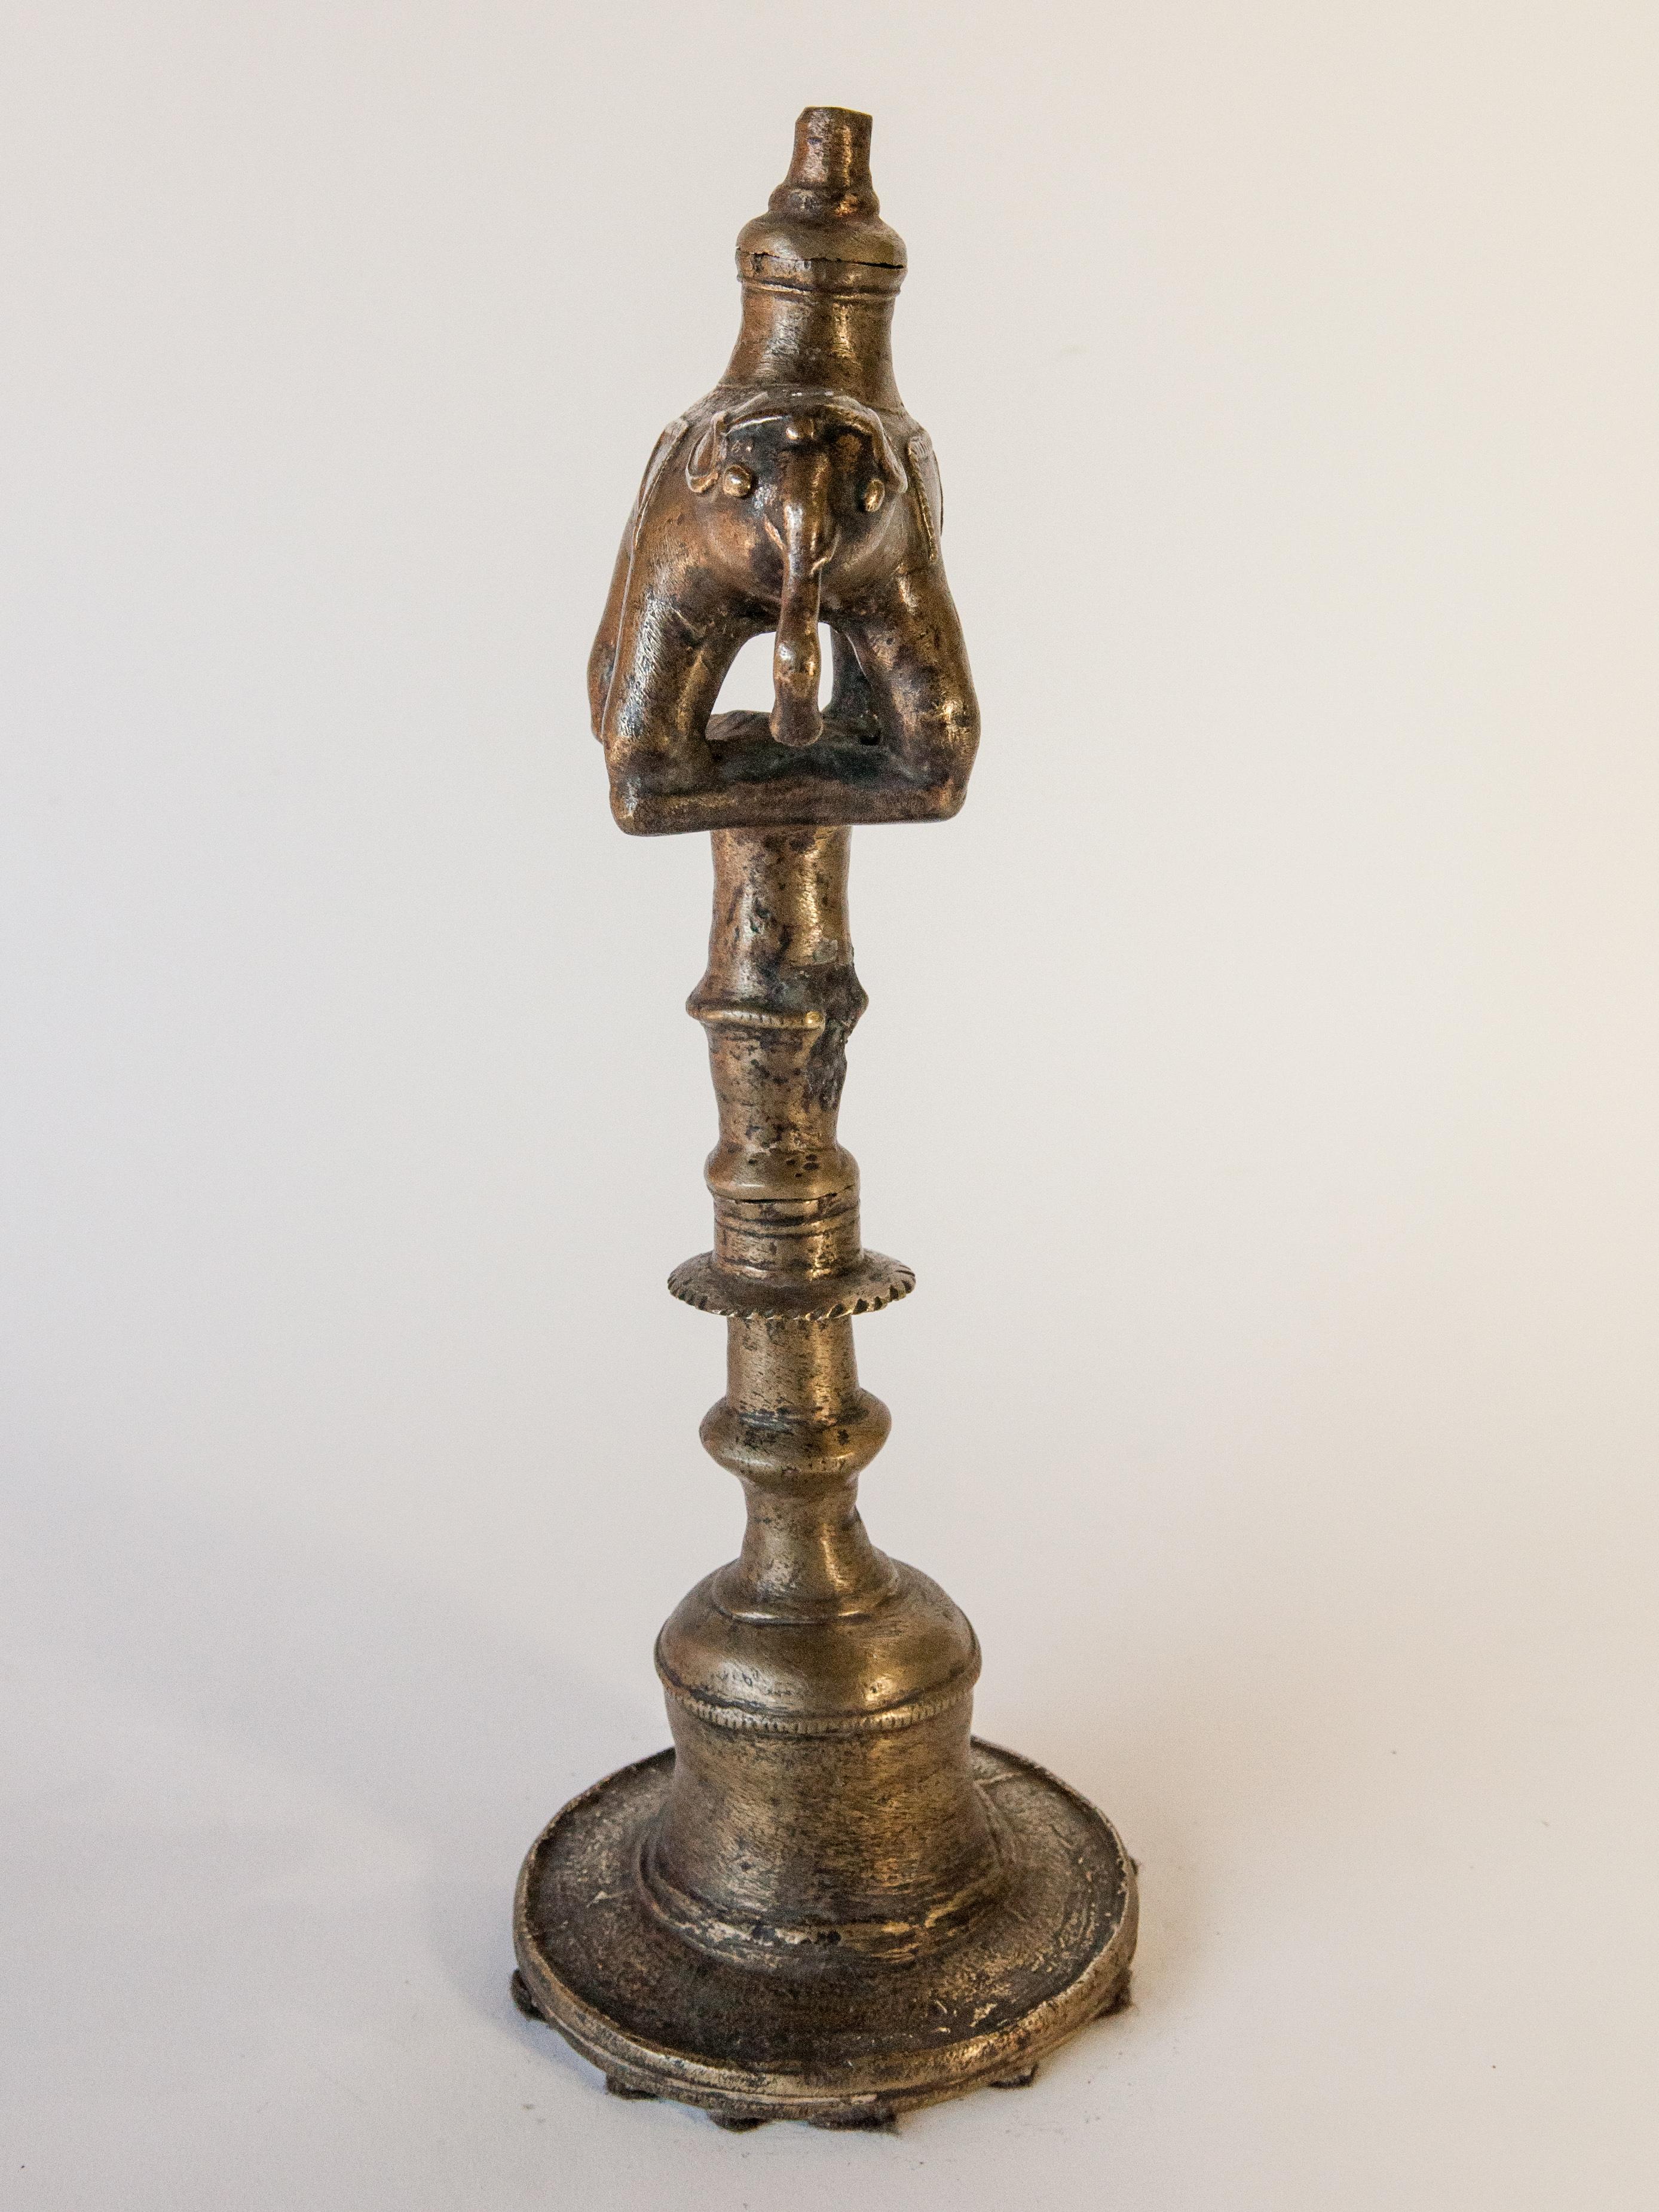 Vintage-Öllampe aus Bronze mit Elefantenmotiv aus dem ländlichen Nepal, Mitte/Ende des 20. Jahrhunderts.
Öl- und Kerosinlampen aus Bronze waren in den Berg- und Hügelgebieten Nepals weit verbreitet, doch mit der zunehmenden Verfügbarkeit von